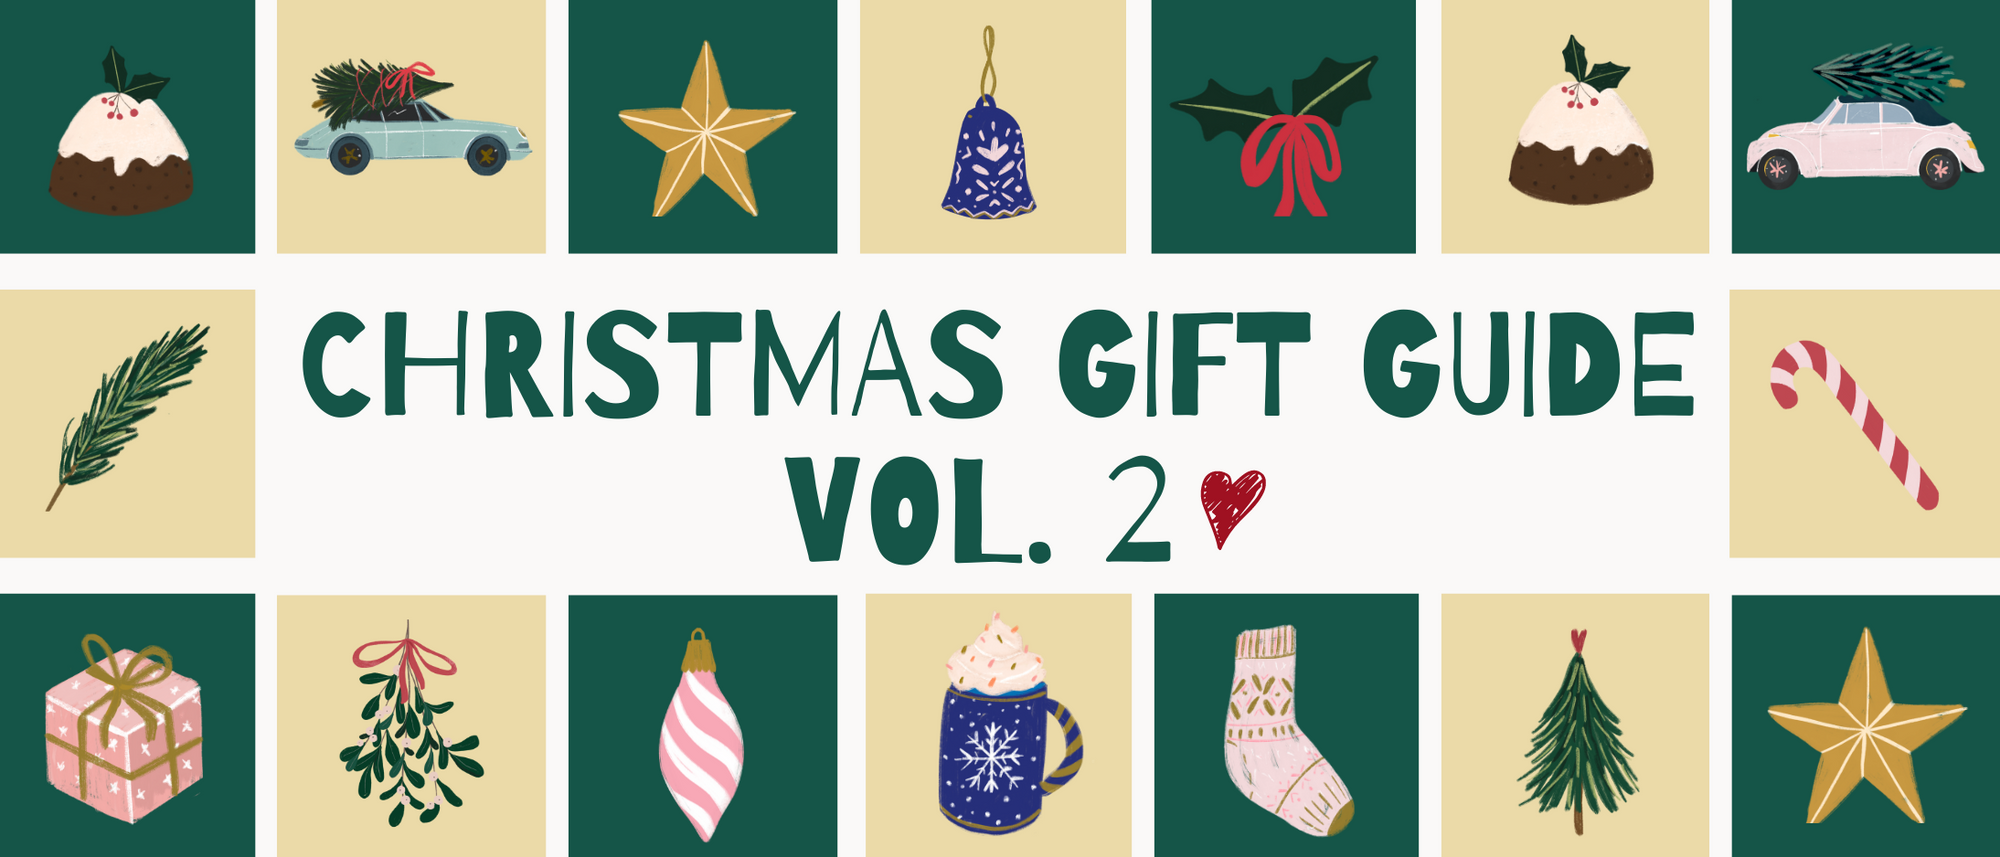 Gift Guide Vol 2: Το Symmetry Living φέρνει τα Χριστούγεννα!